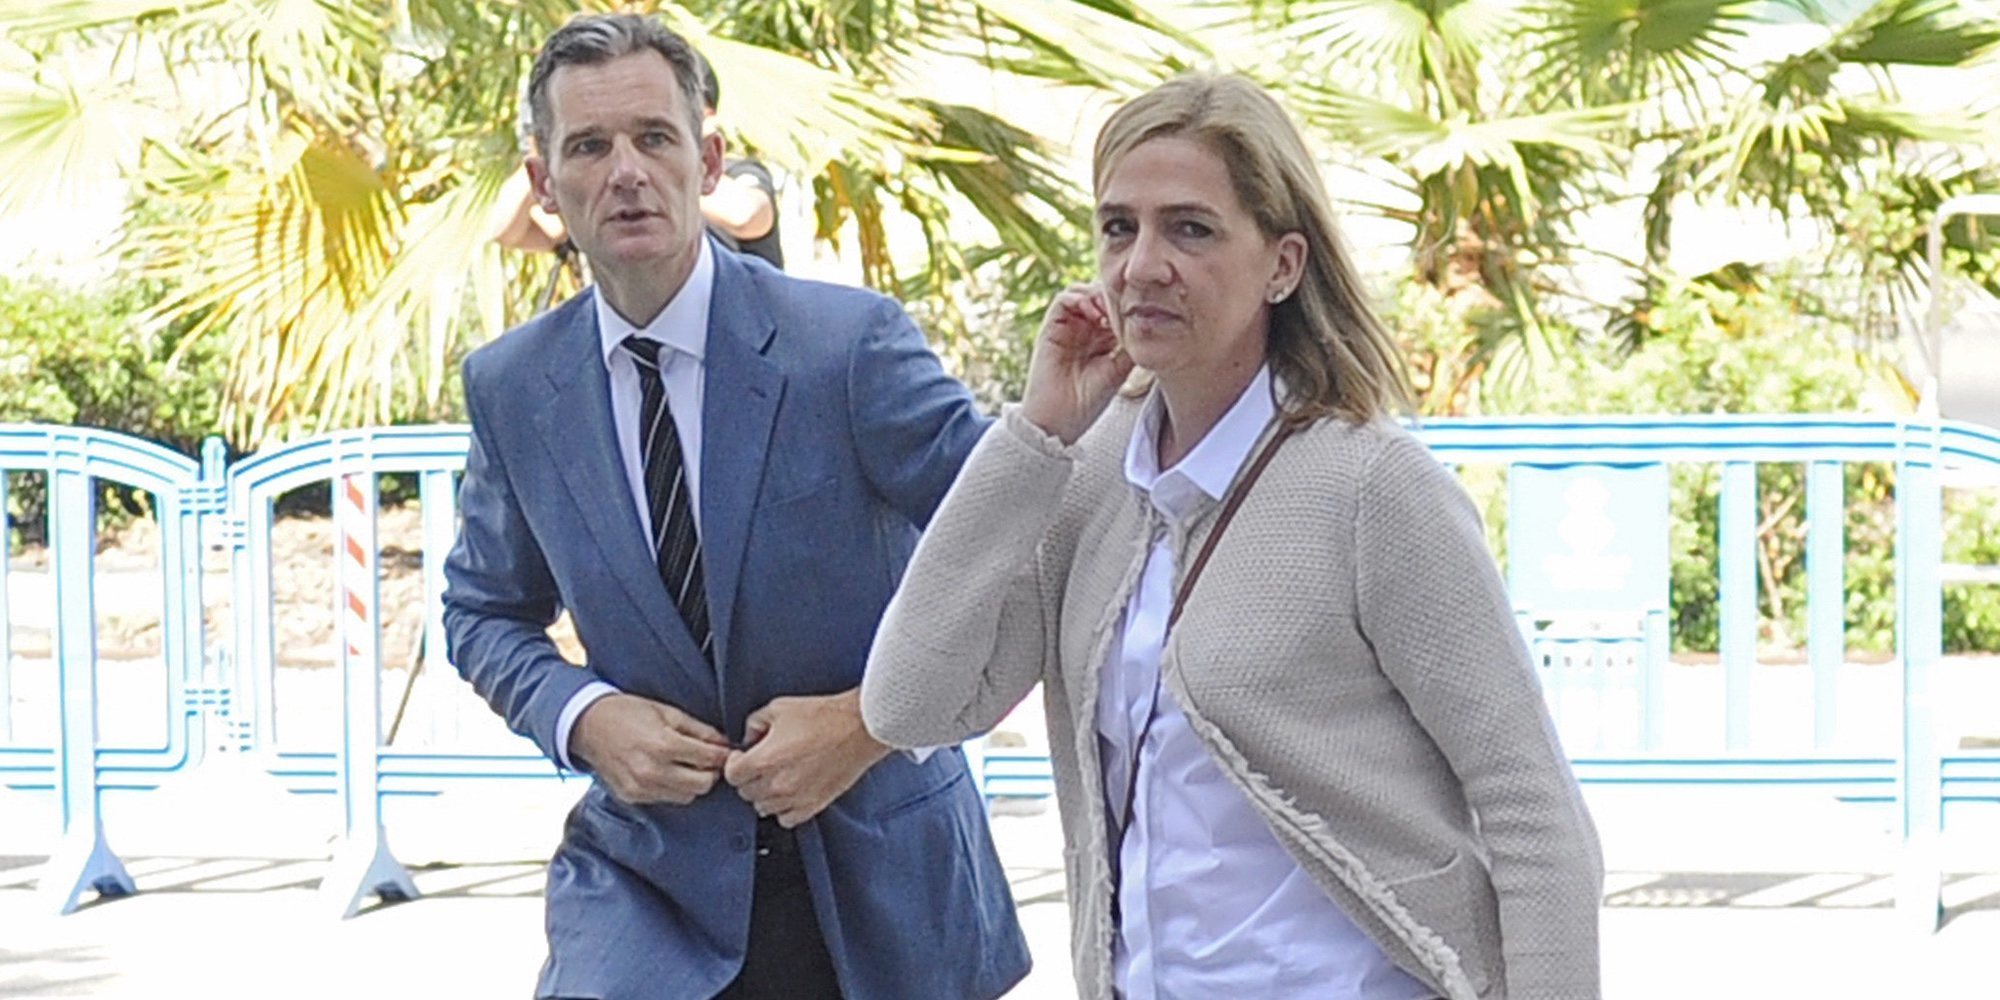 Las dudas y tensión de Iñaki Urdangarin y los consejos que la Infanta Cristina no quiere escuchar